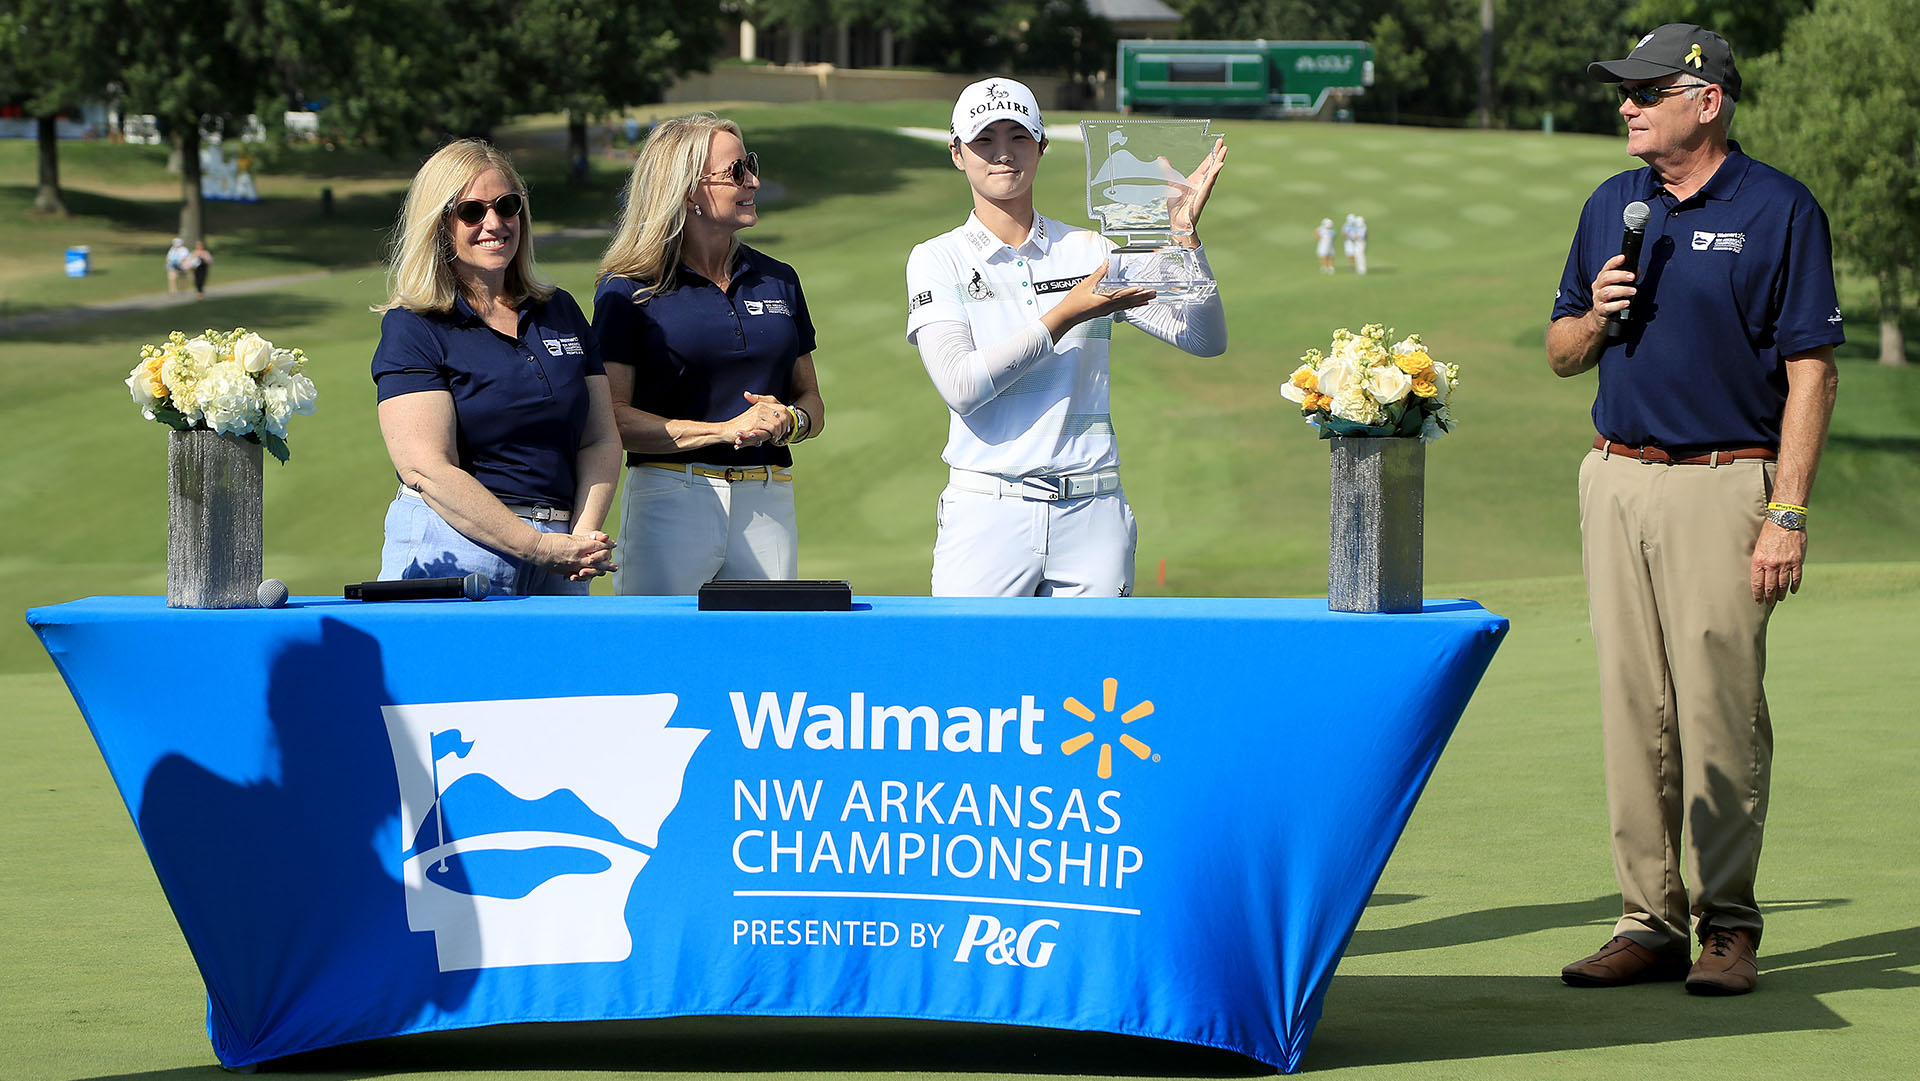 LPGA’s NW Arkansas Championship purse increases by $300k